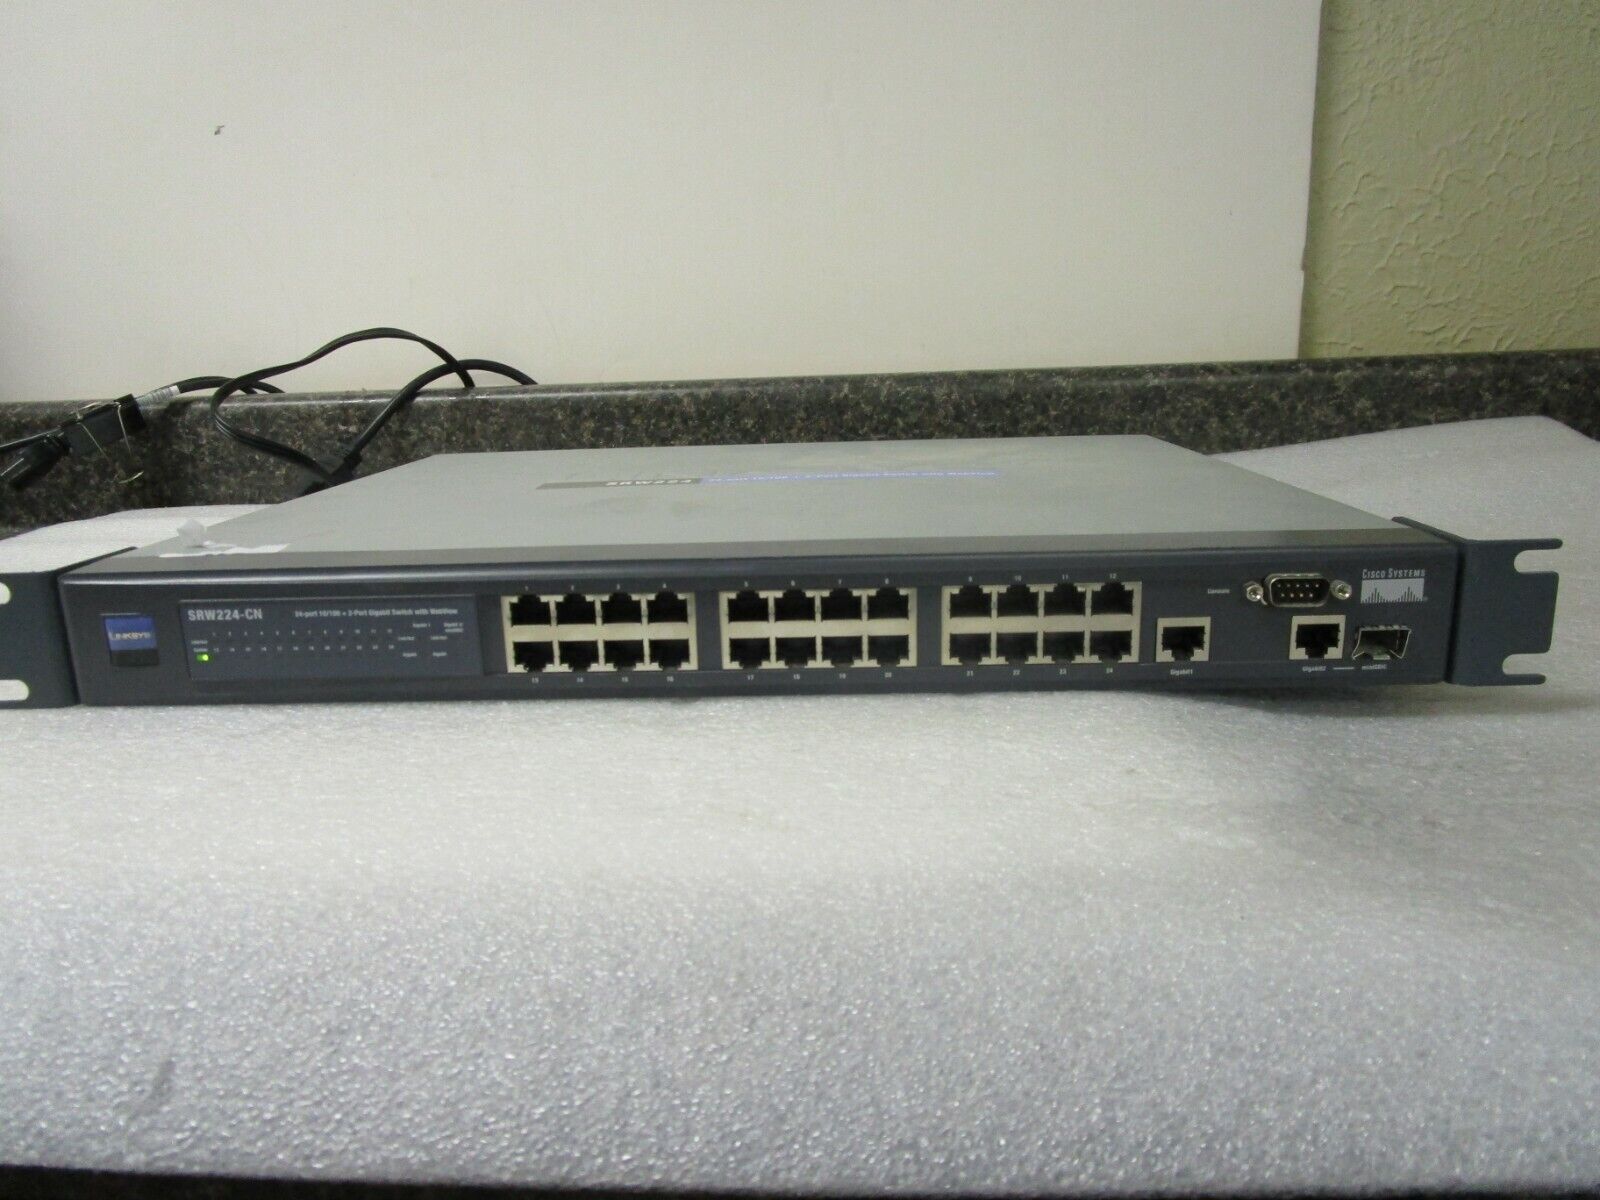 Cisco Linksys SRW224-CN 24-Port 10/100 +2 Port Gigabit Switch with WebView